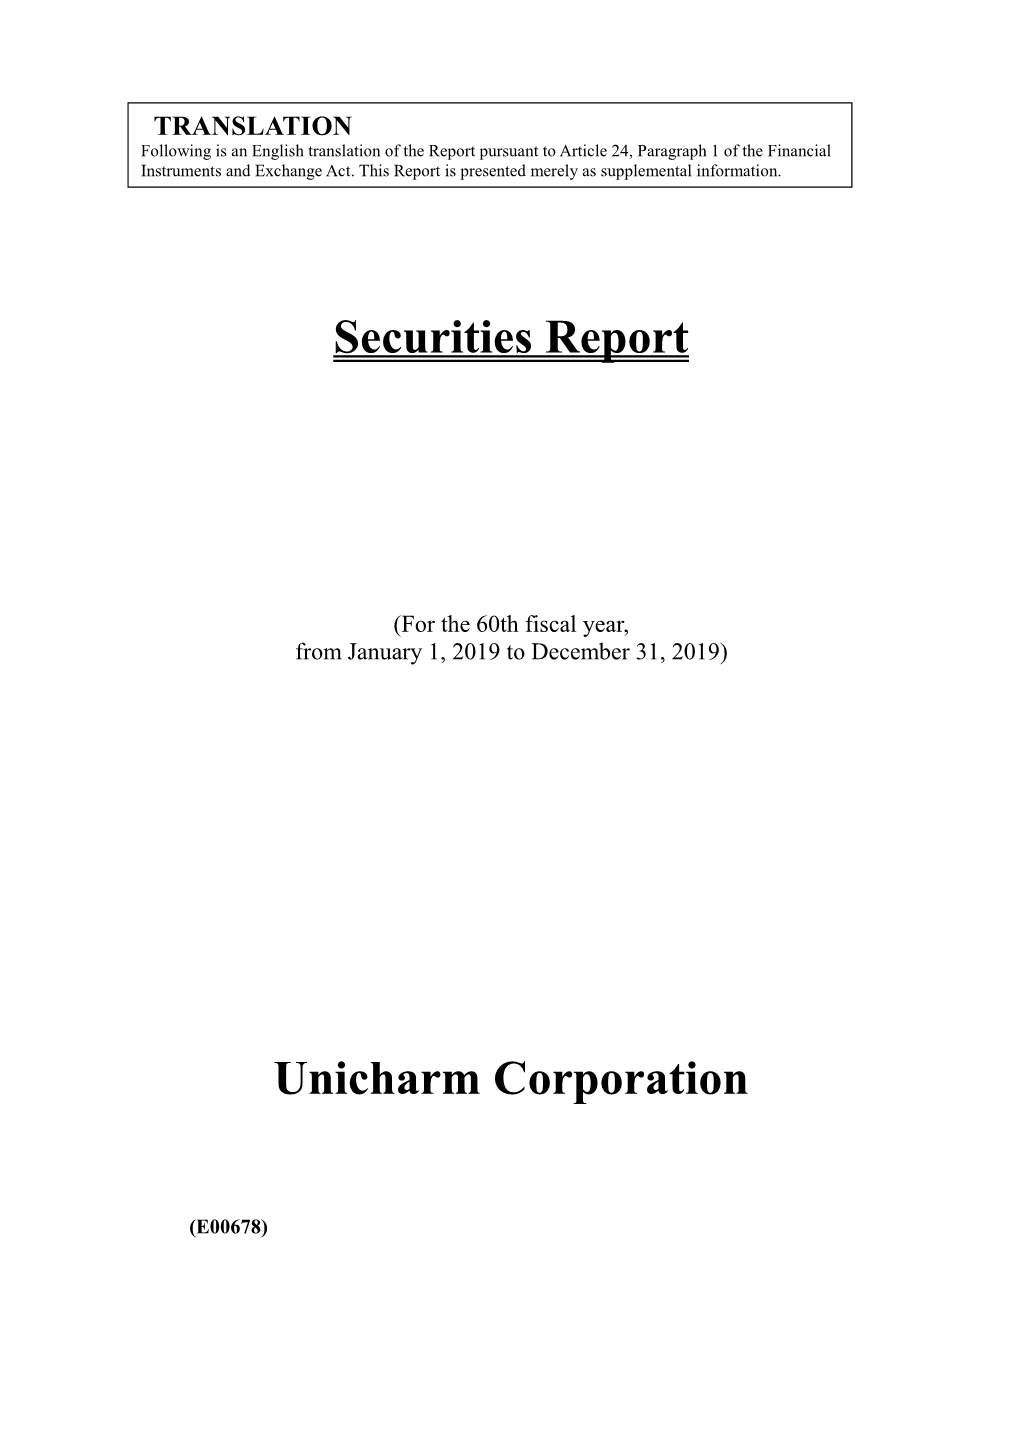 Securities Report Unicharm Corporation